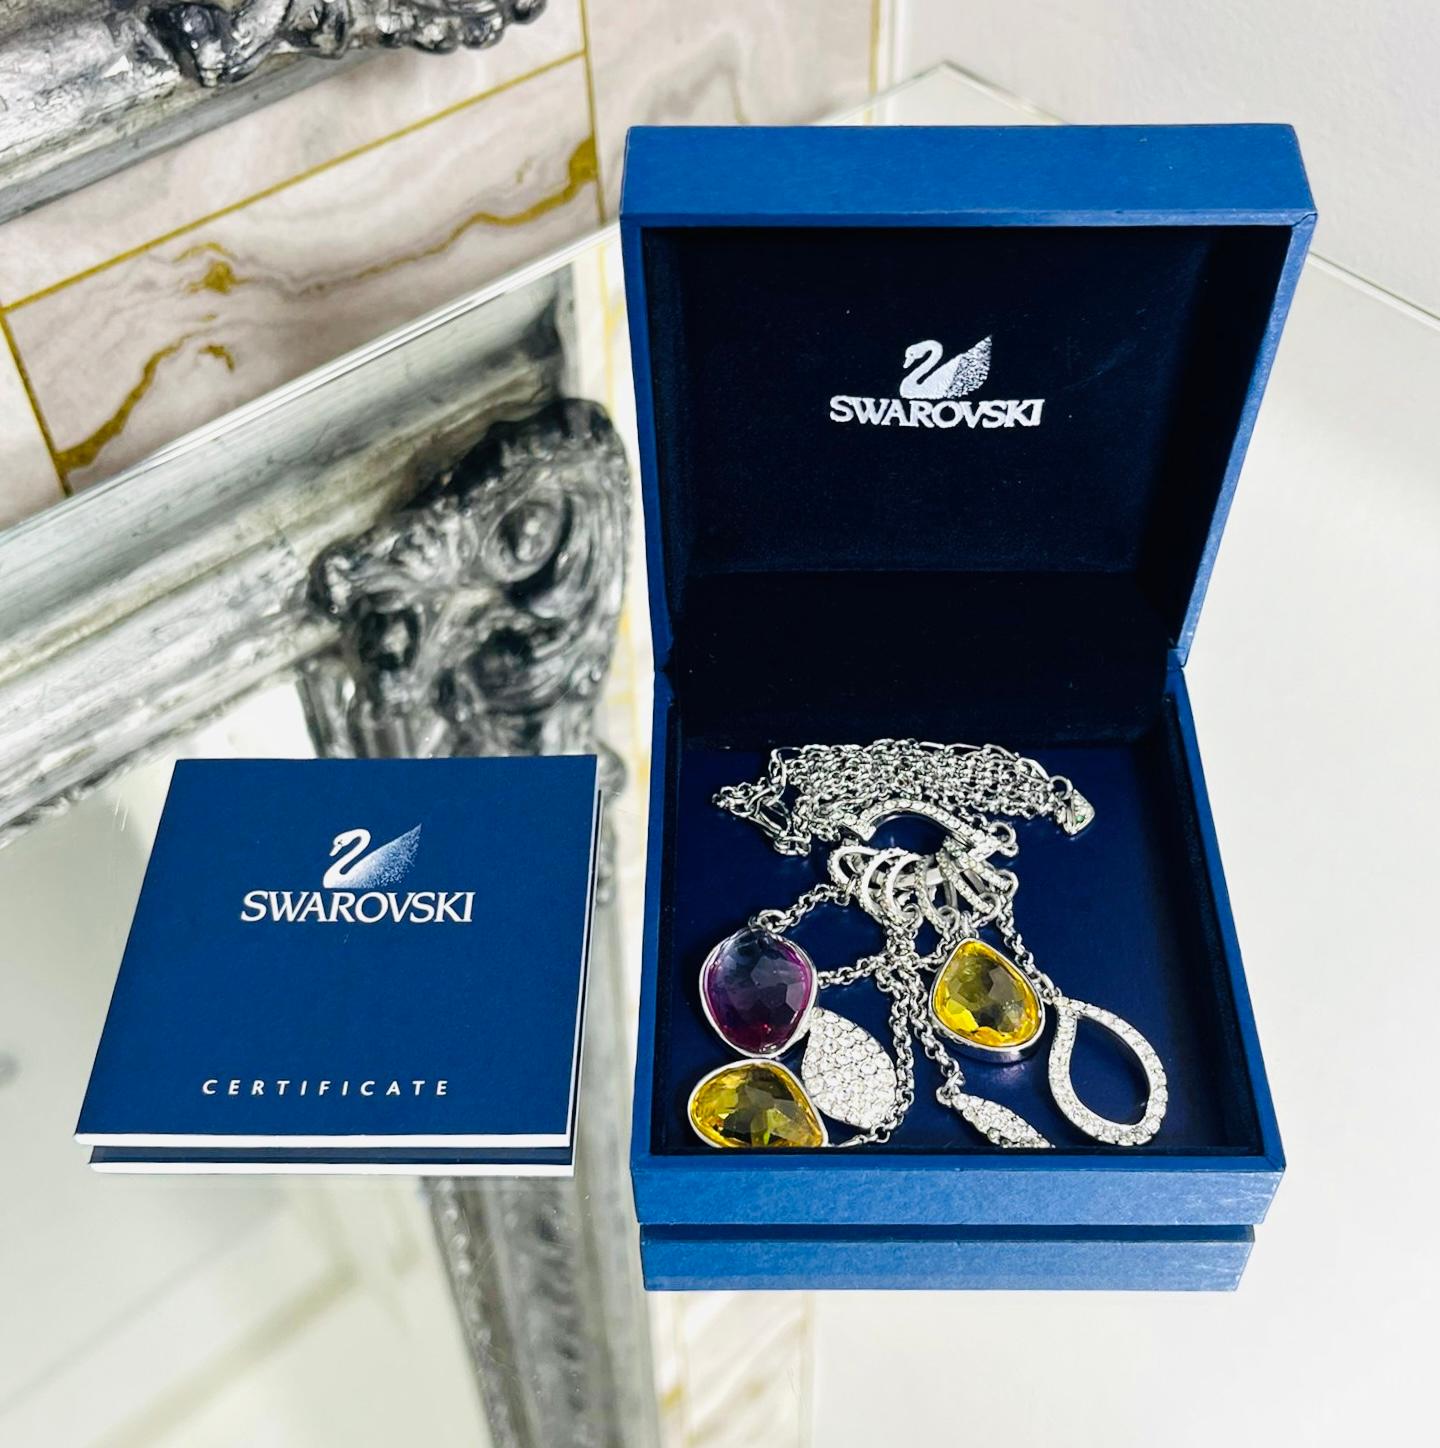 Swarovski Vintage 1980er Jahre Kristall & Sterling Silber Halskette

Sechs Ringe in Kristallschichten mit baumelnden Ketten und übergroßen, farbigen Kristallanhängern in Lila und Gelb.

Heldly ist an einer silbernen Gliederkette mit